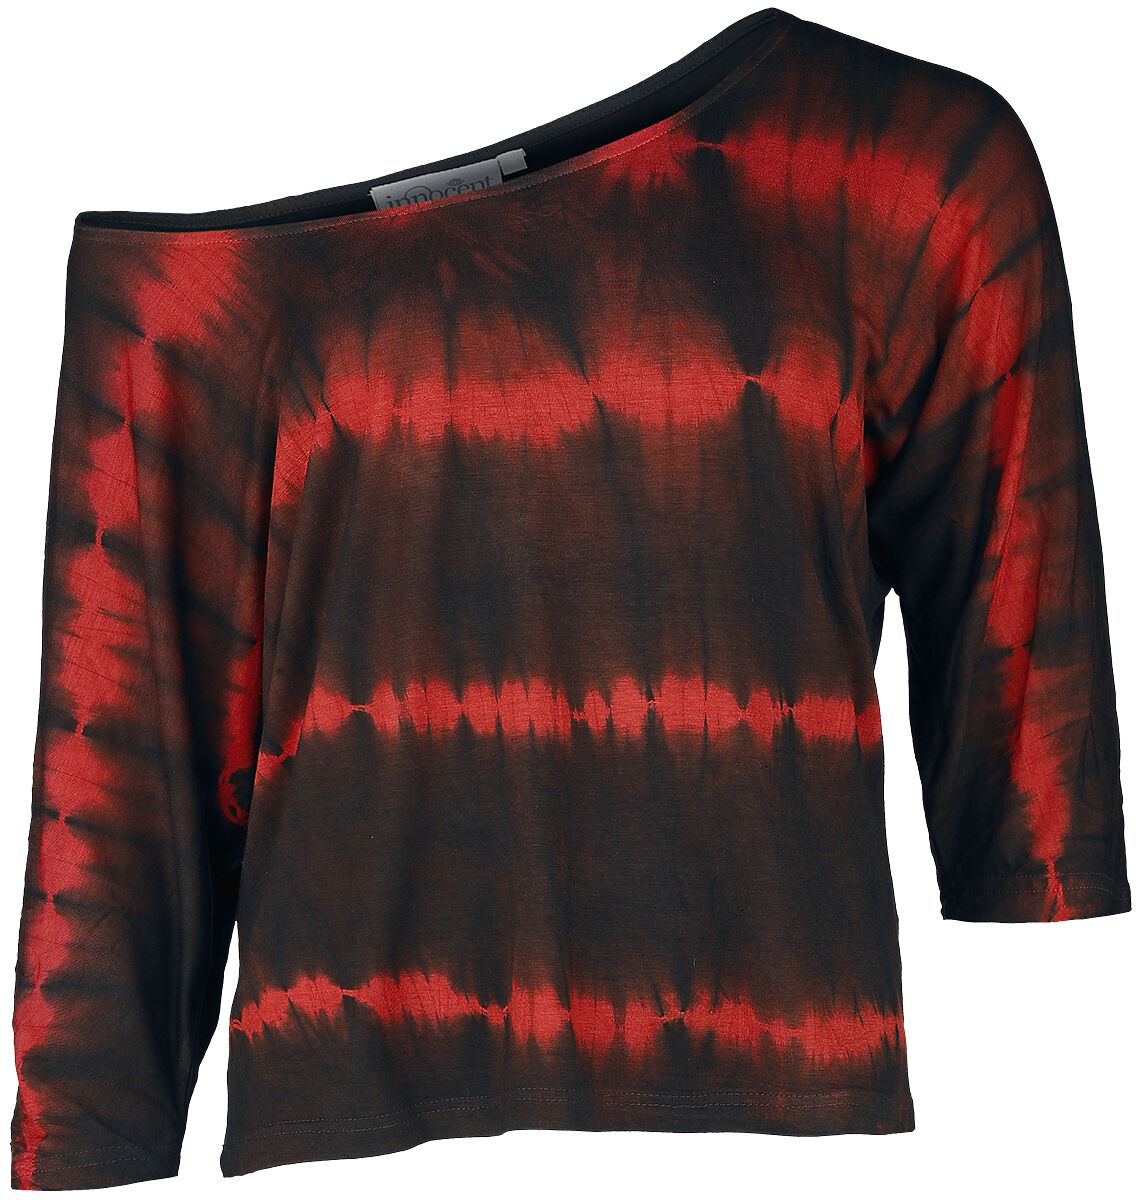 Innocent - Gothic Langarmshirt - Solana Top - XS bis 4XL - für Damen - Größe L - schwarz/rot